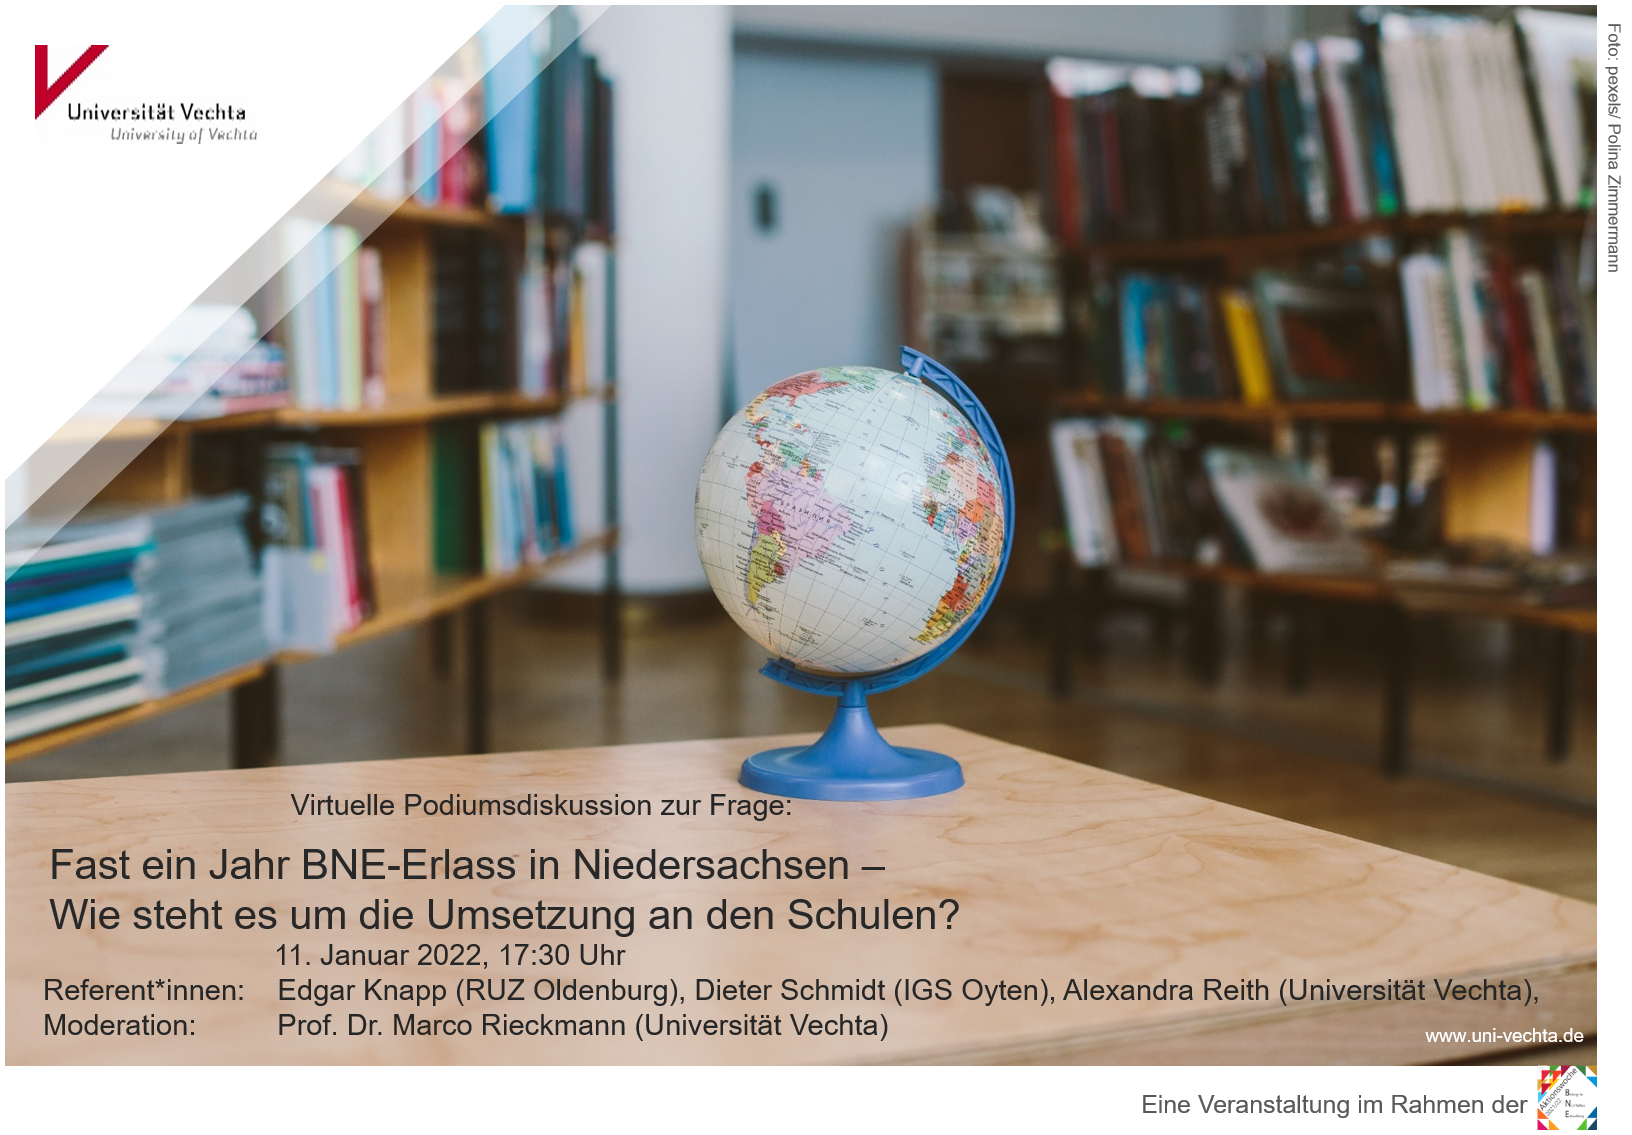 Online-Podiumsdiskussion 11.1.2022, 17:30 Uhr "Fast ein Jahr BNE-Erlass in Niedersachsen - Wie steht es um die Umsetzung an den Schulen?"